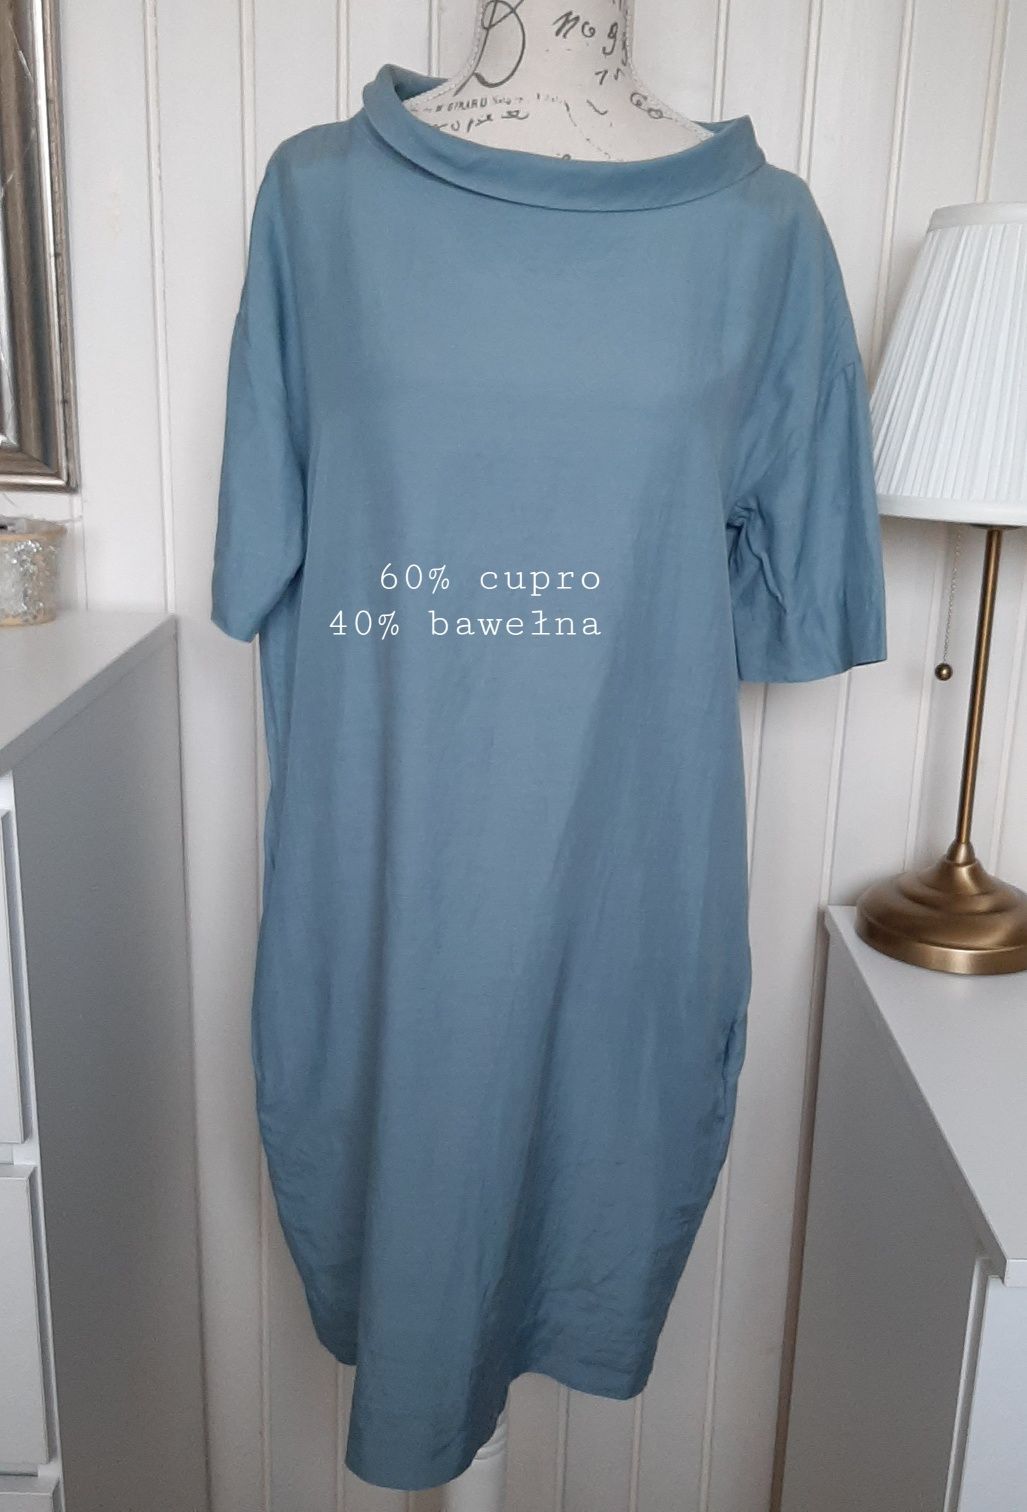 bawełniana turkusowa, błękitna sukienka COS XS 34